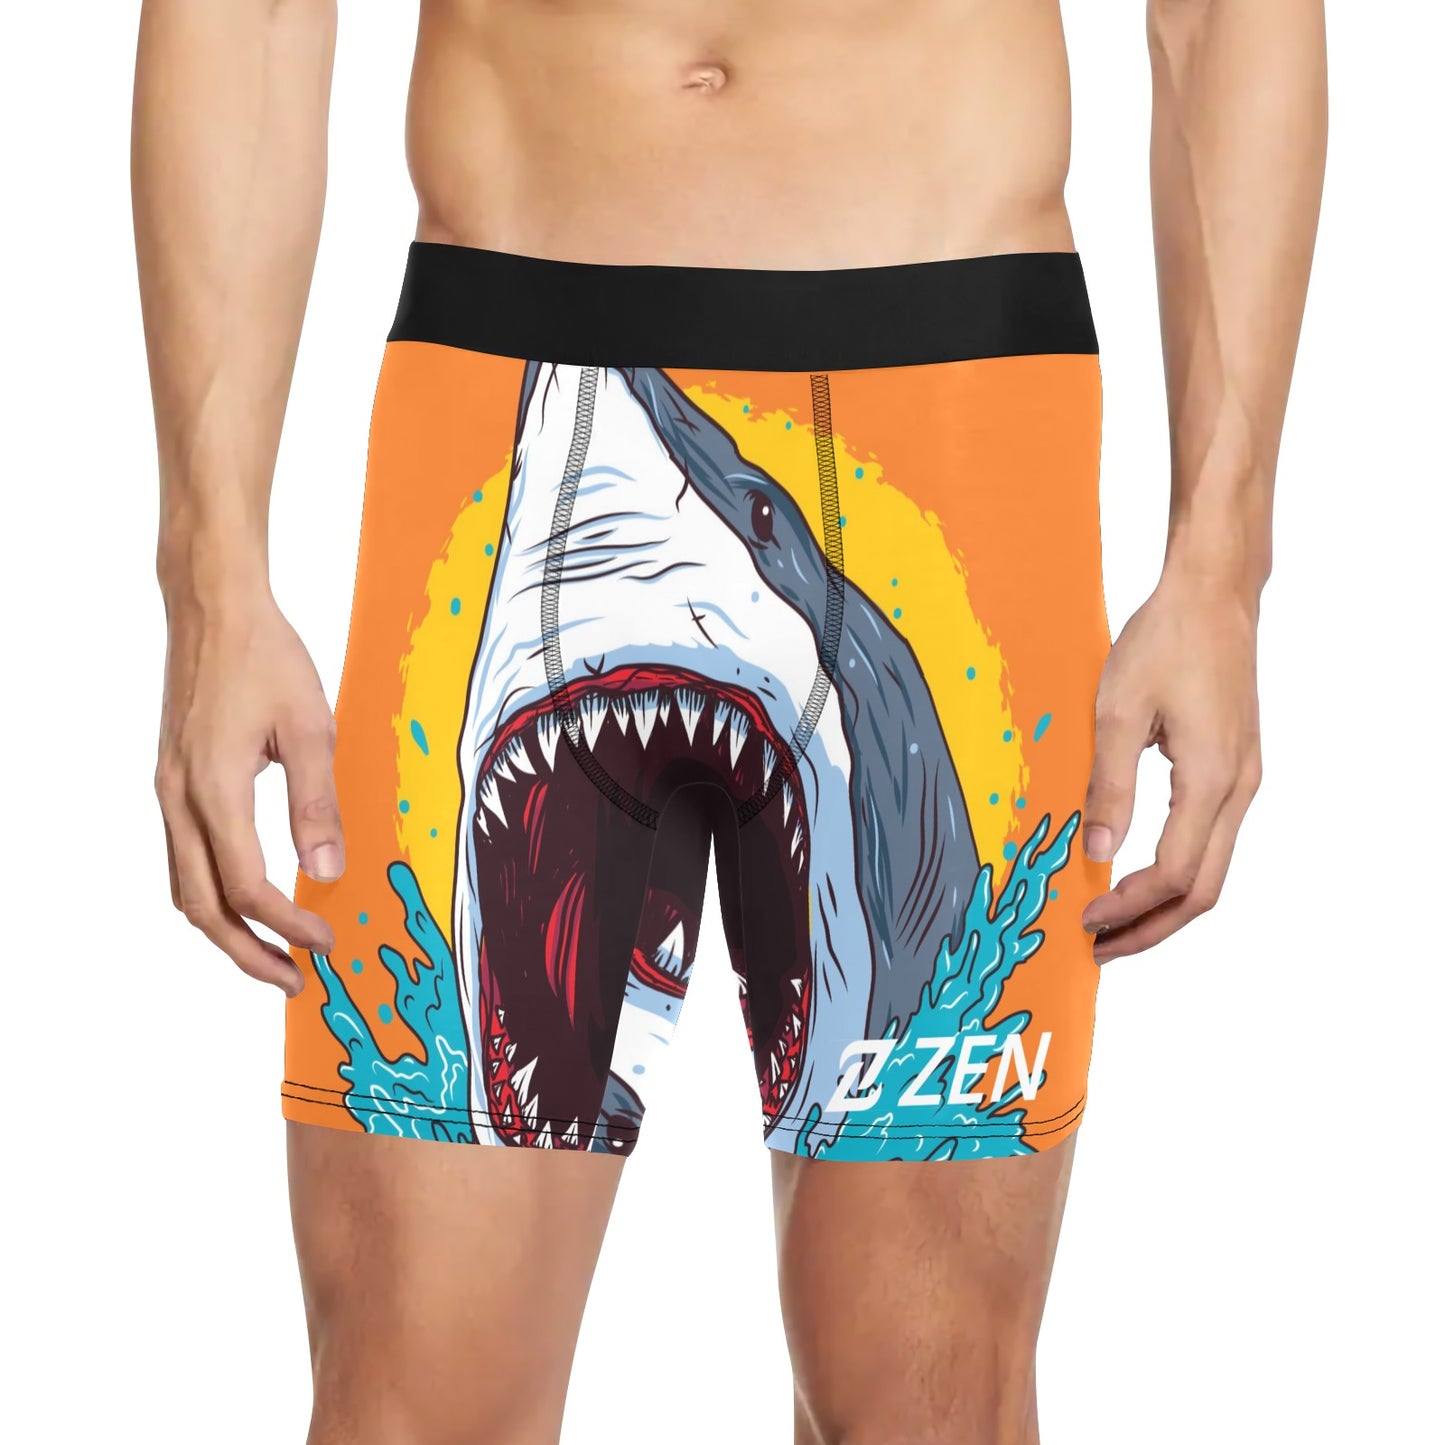 Zen Boxers Long - Shark